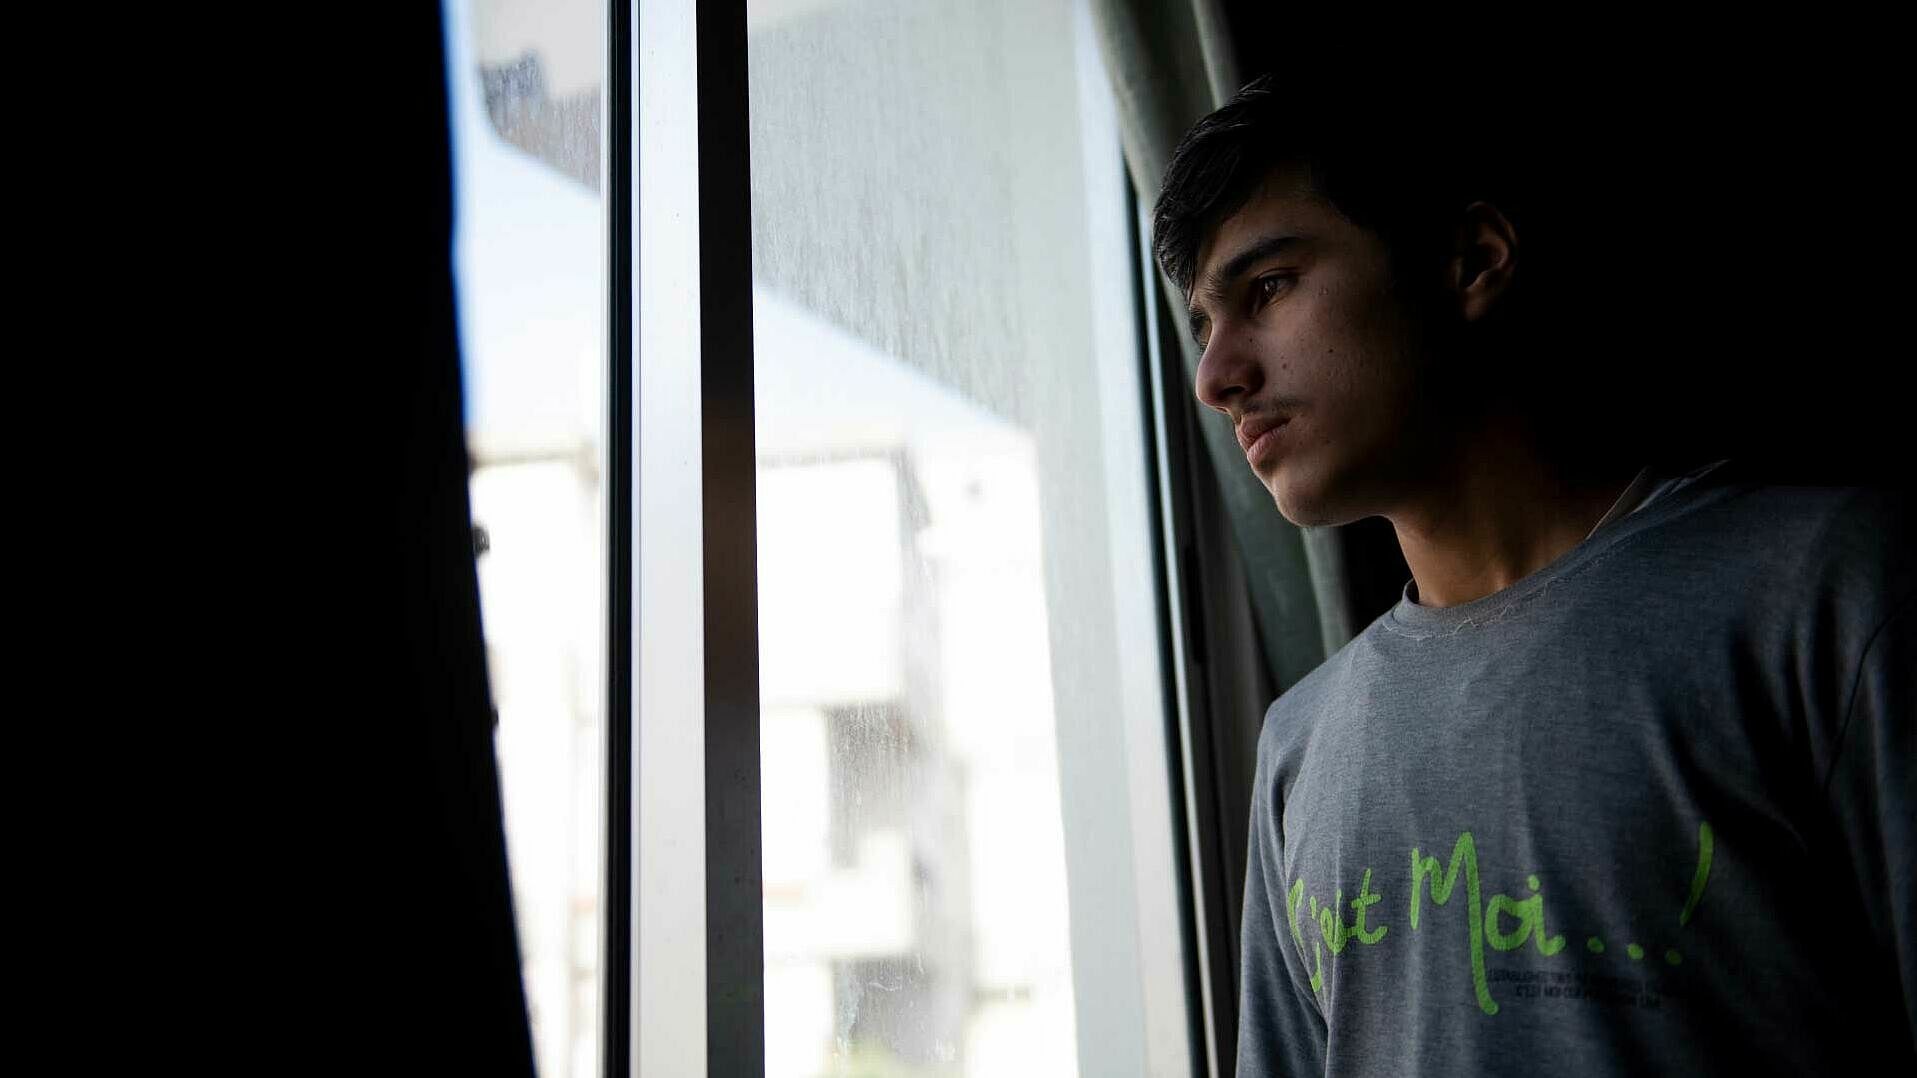 Der syrische Flüchtling Amer al-Hleil, 16, schaut aus dem Fenster der Wohnung, die er mit seiner Familie in Keserwan, Libanon, teilt. Amer leidet unter schweren Depressionen und hatte schon Selbstmordgedanken. 